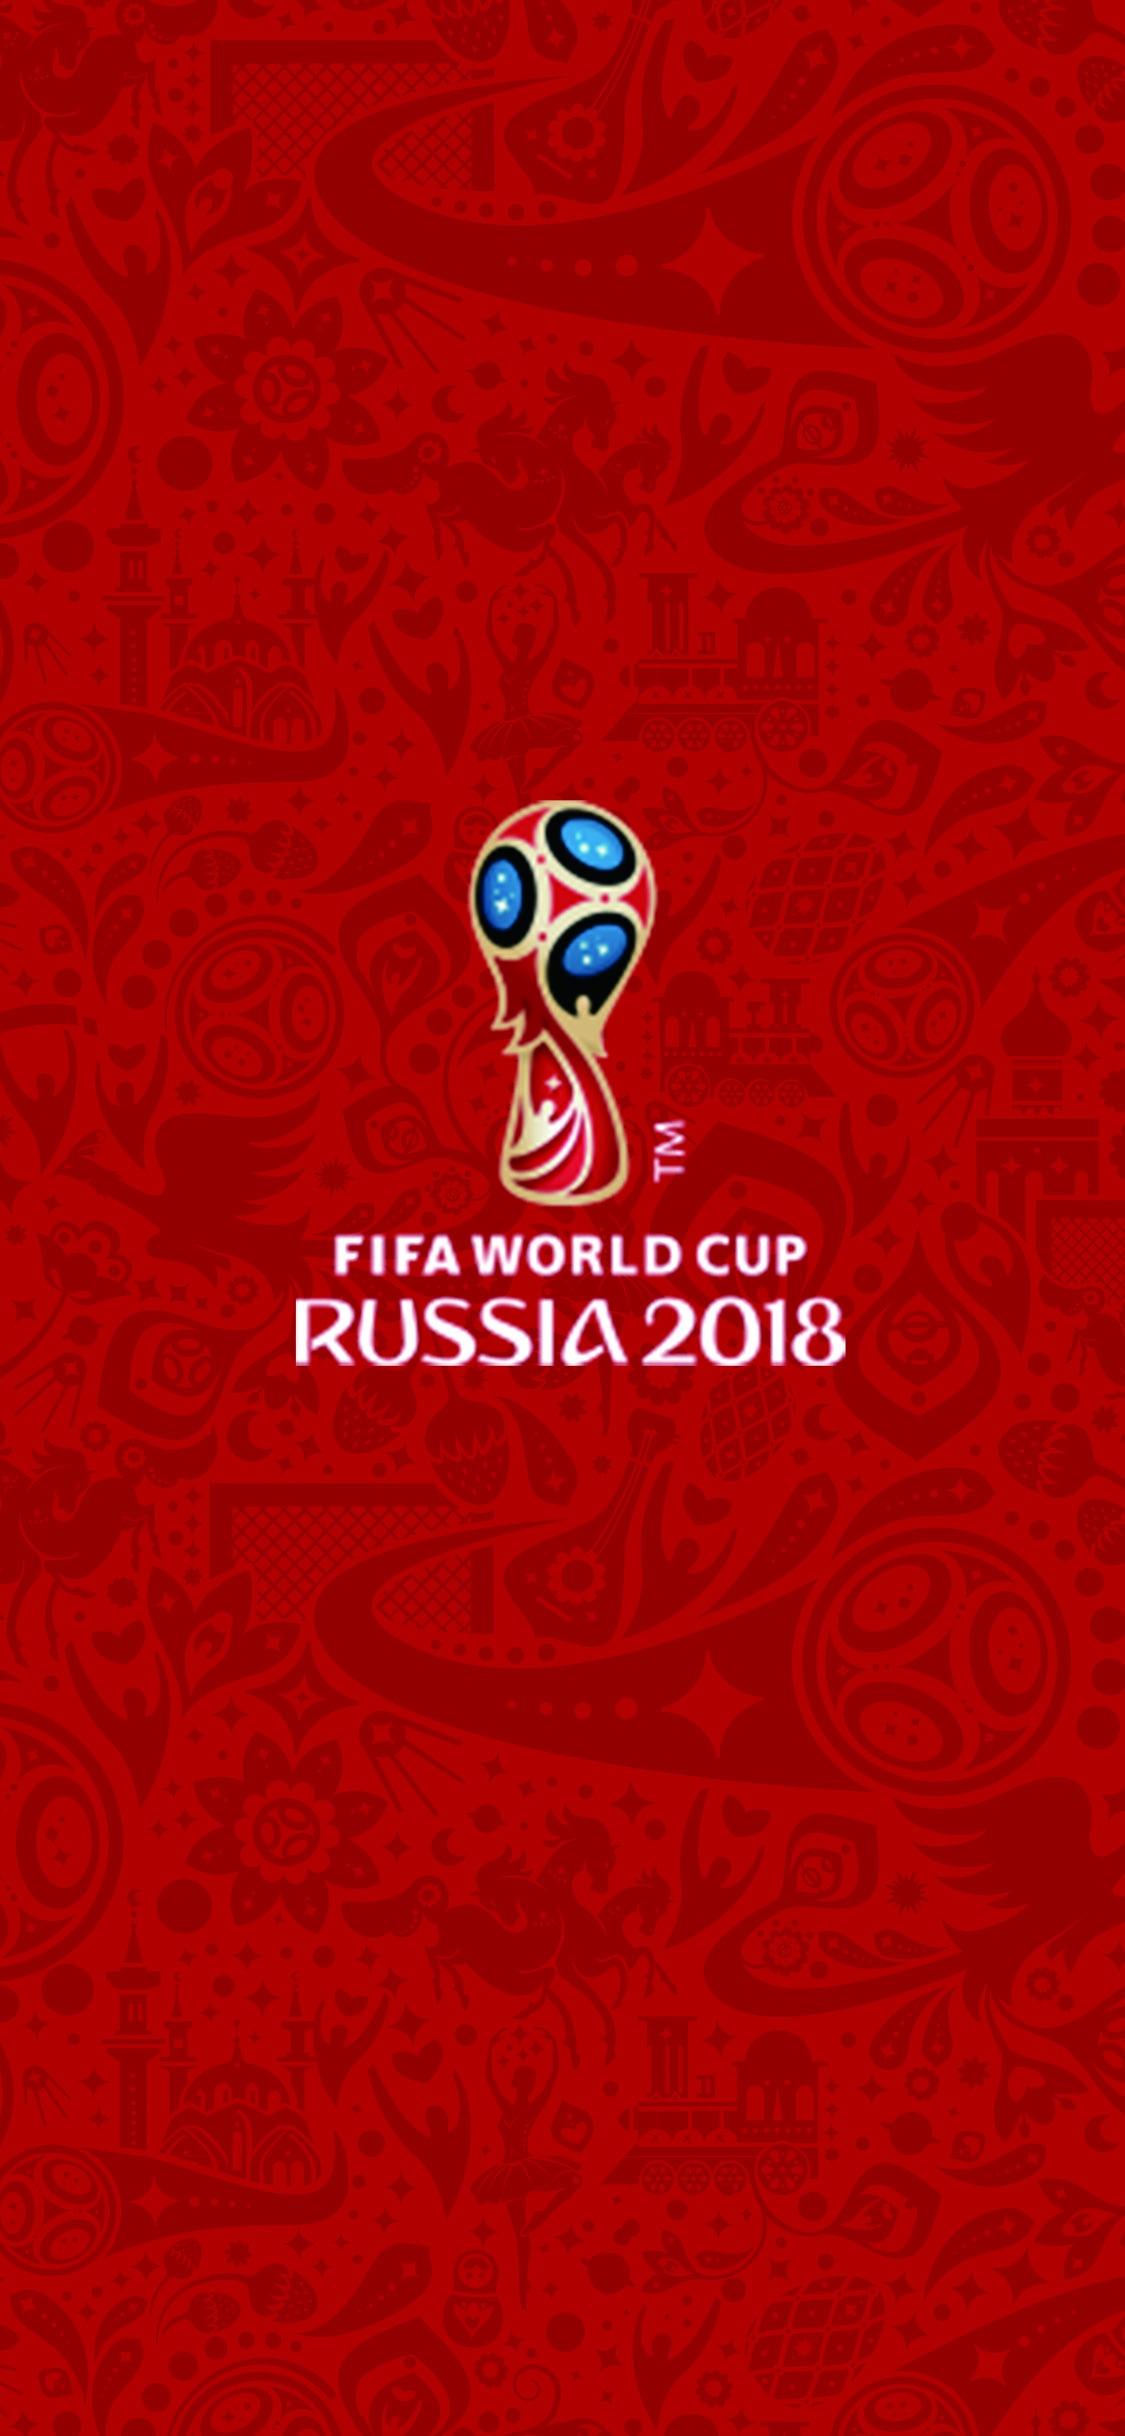 2018俄罗斯世界杯会徽